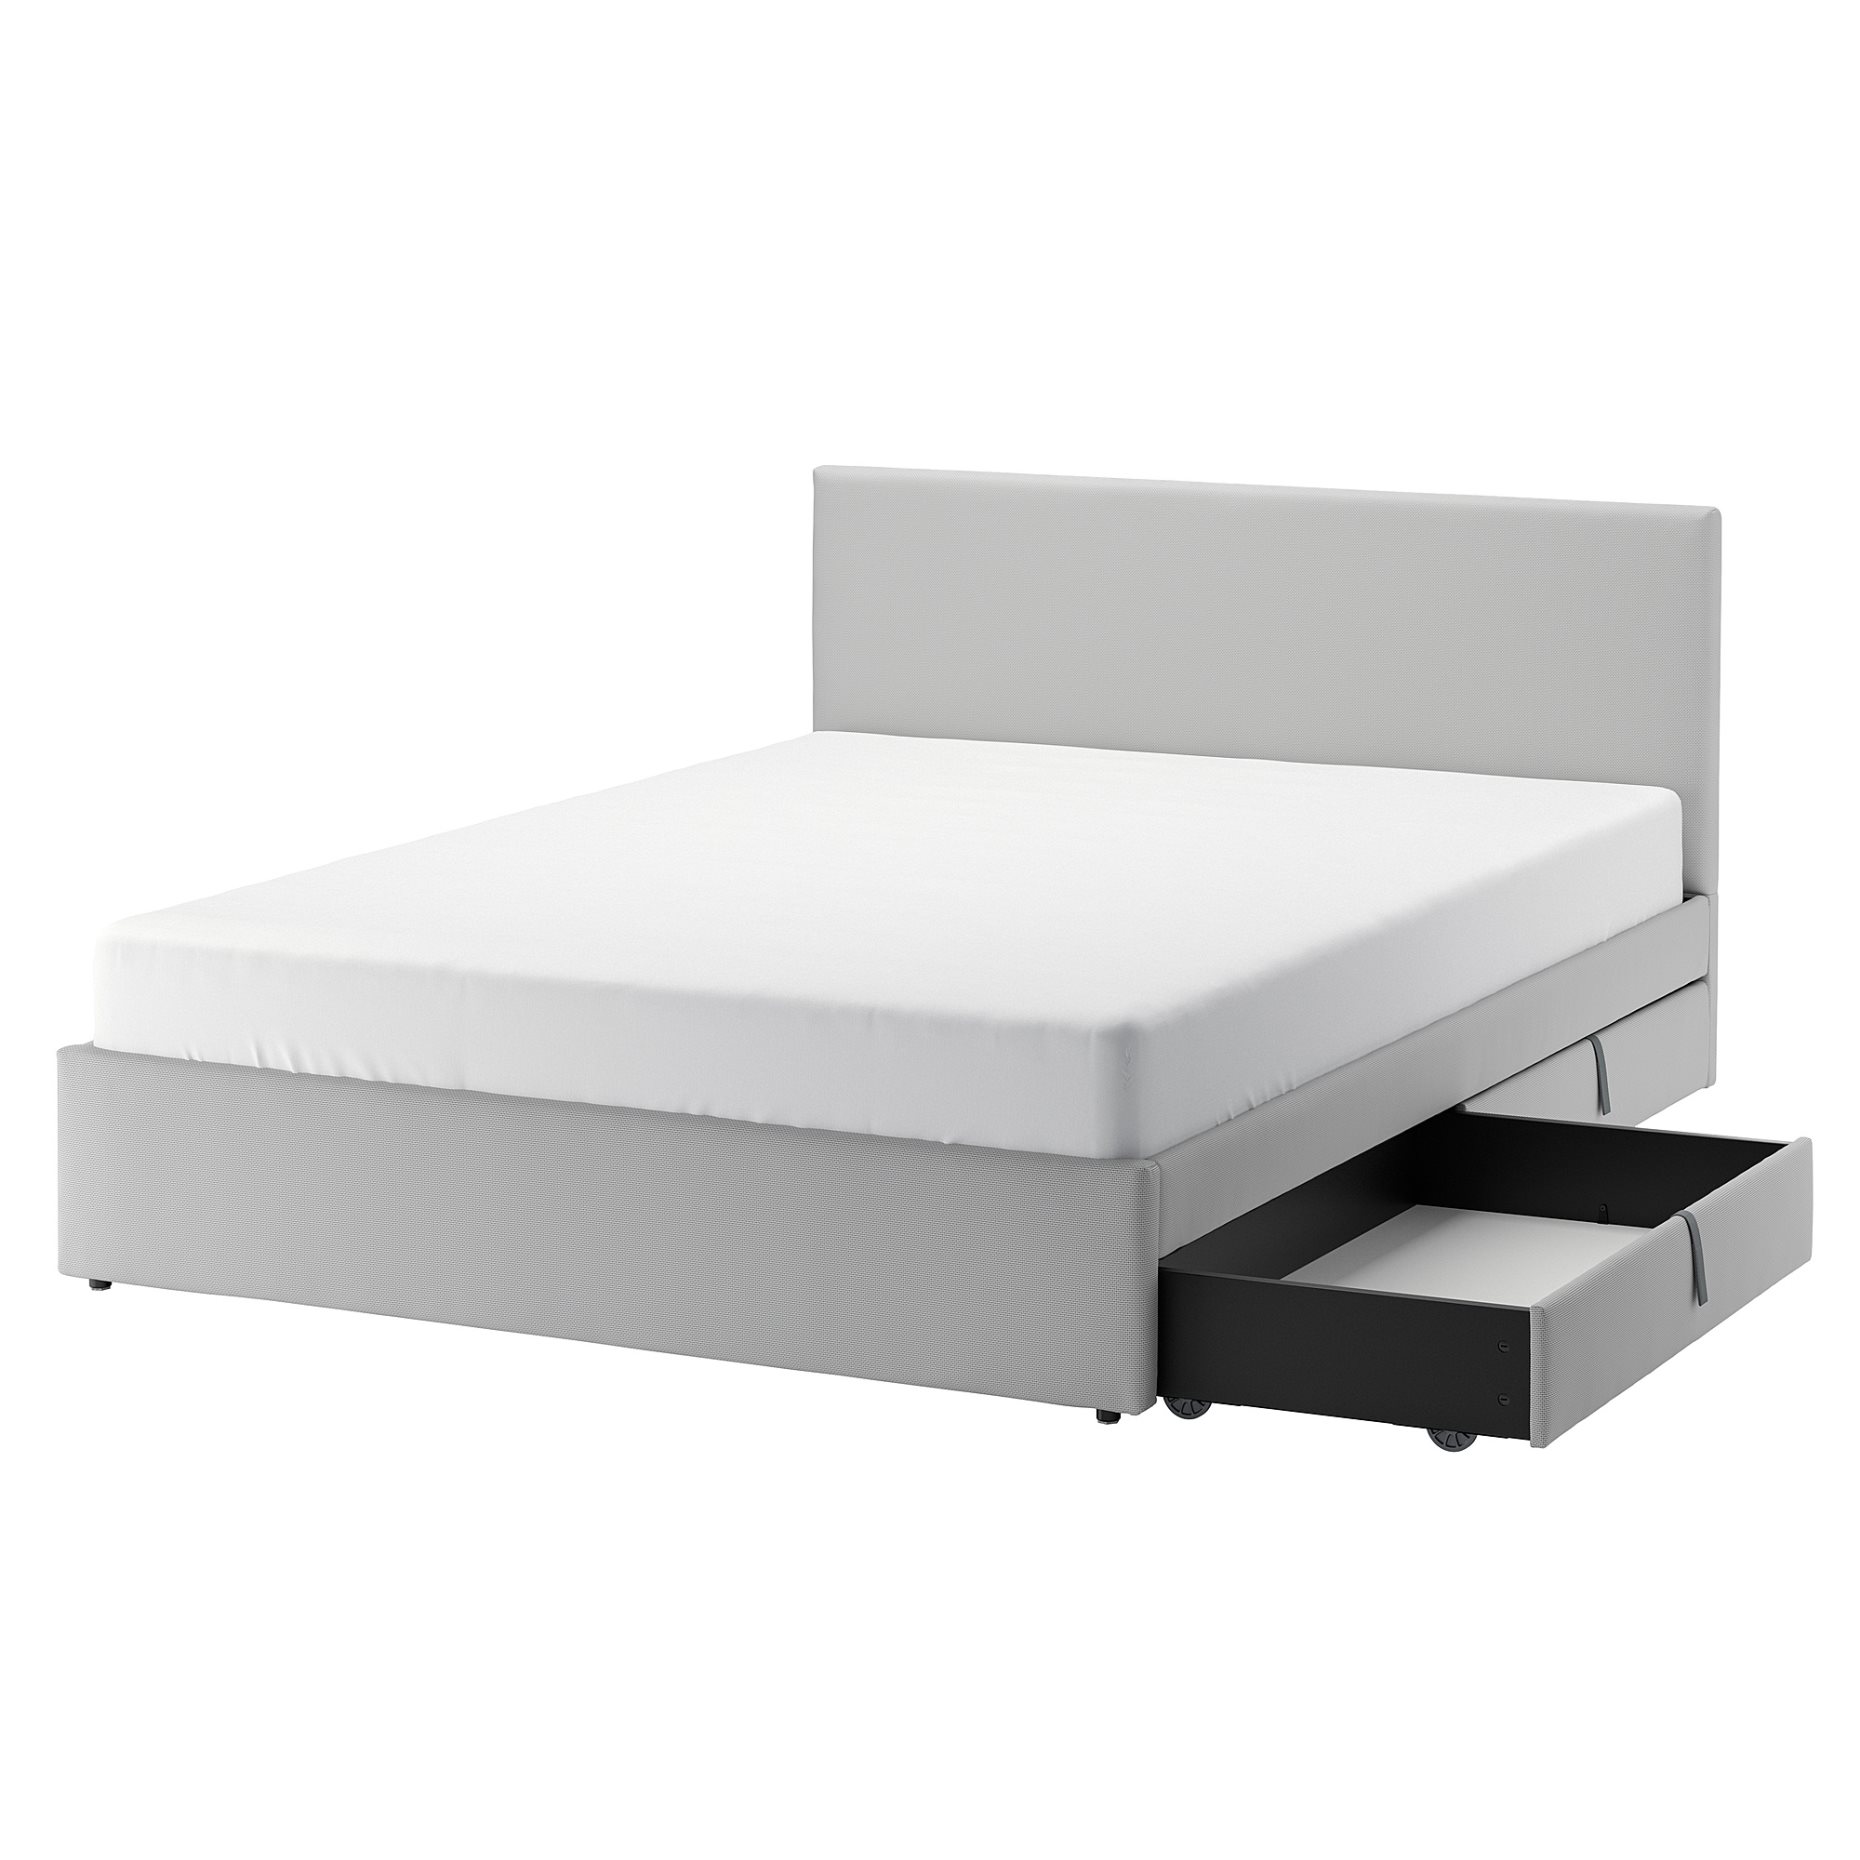 GLADSTAD, κρεβάτι με επένδυση και 2 αποθηκευτικά κουτιά, 140x200 cm, 094.067.98